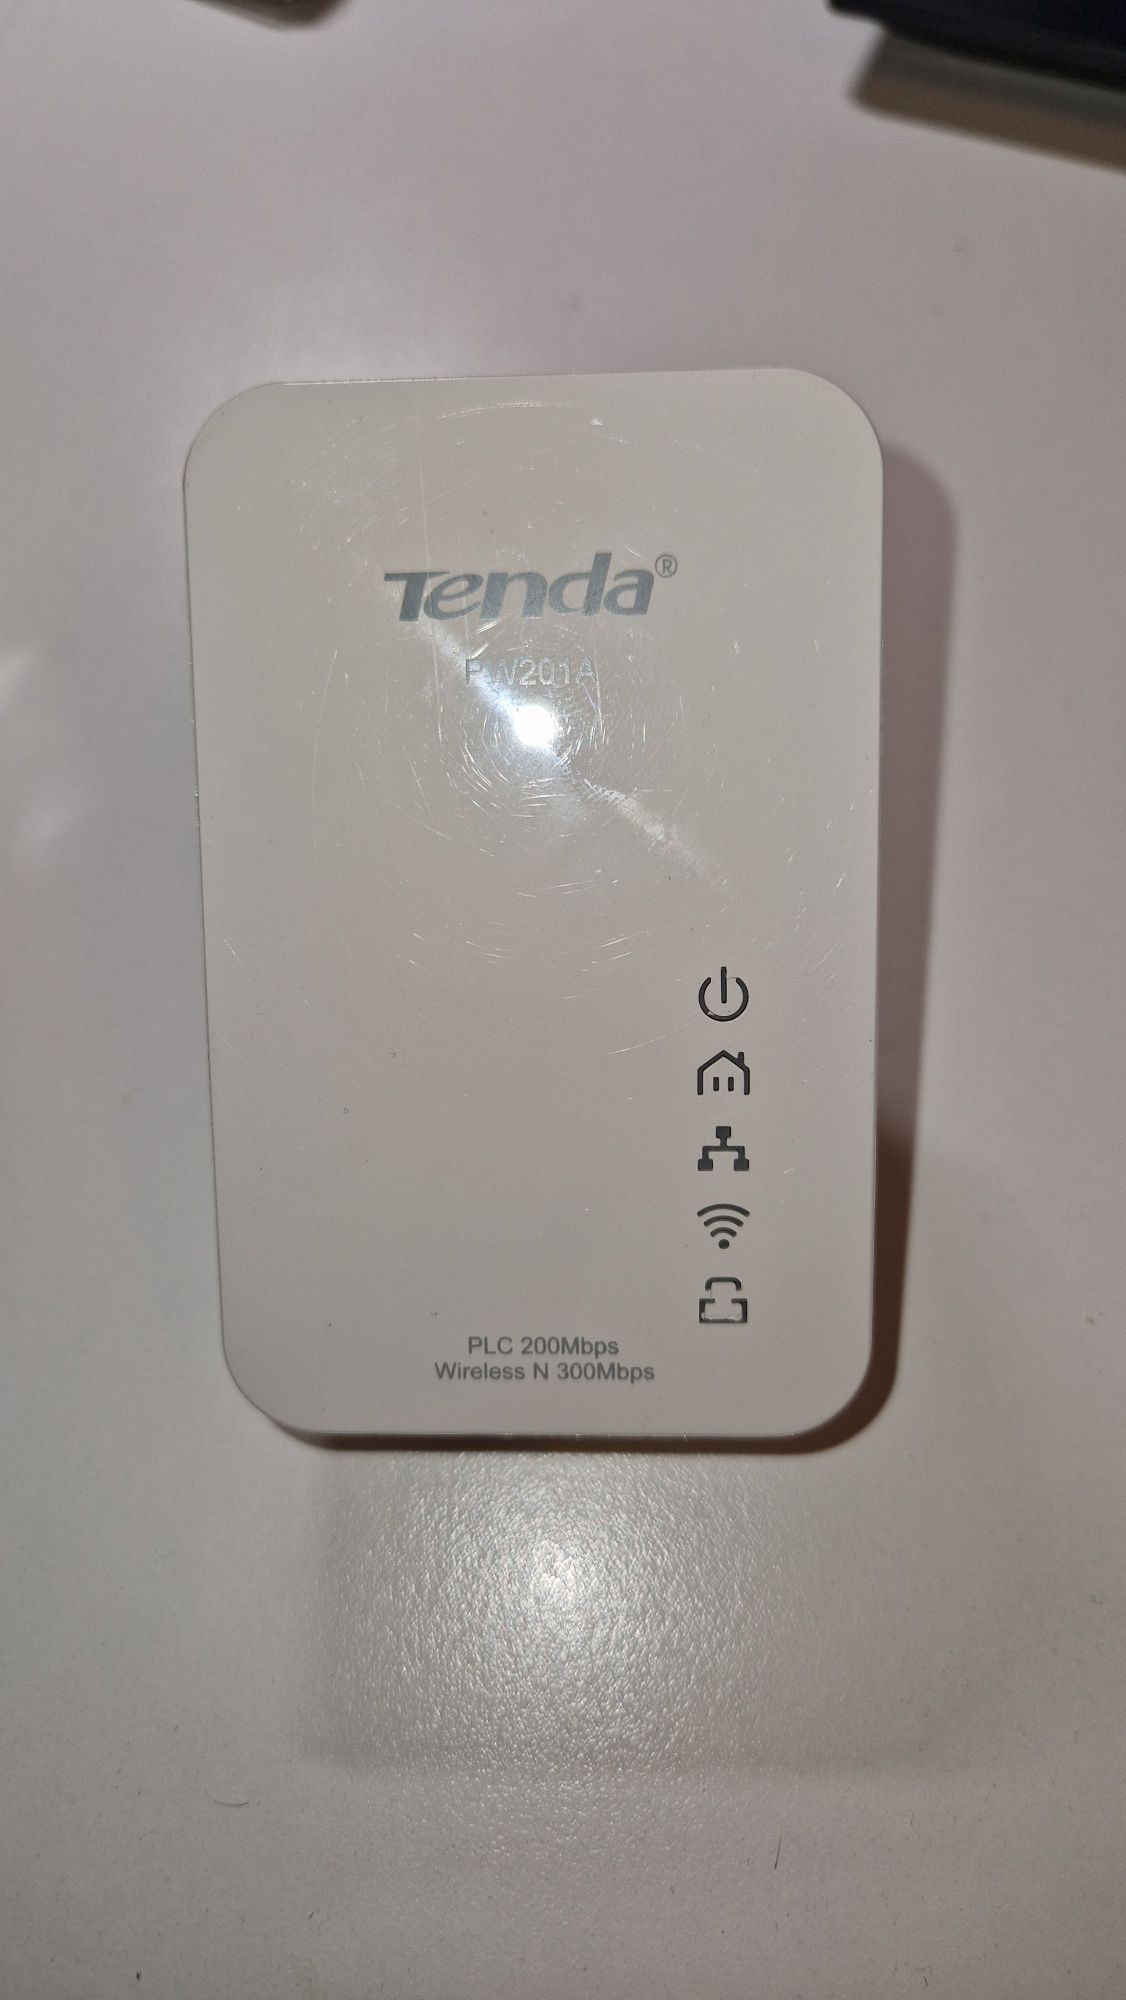 Kit wifi extender Wireless TENDA PW201A+P200 Homeplug AV, 300 Mbps